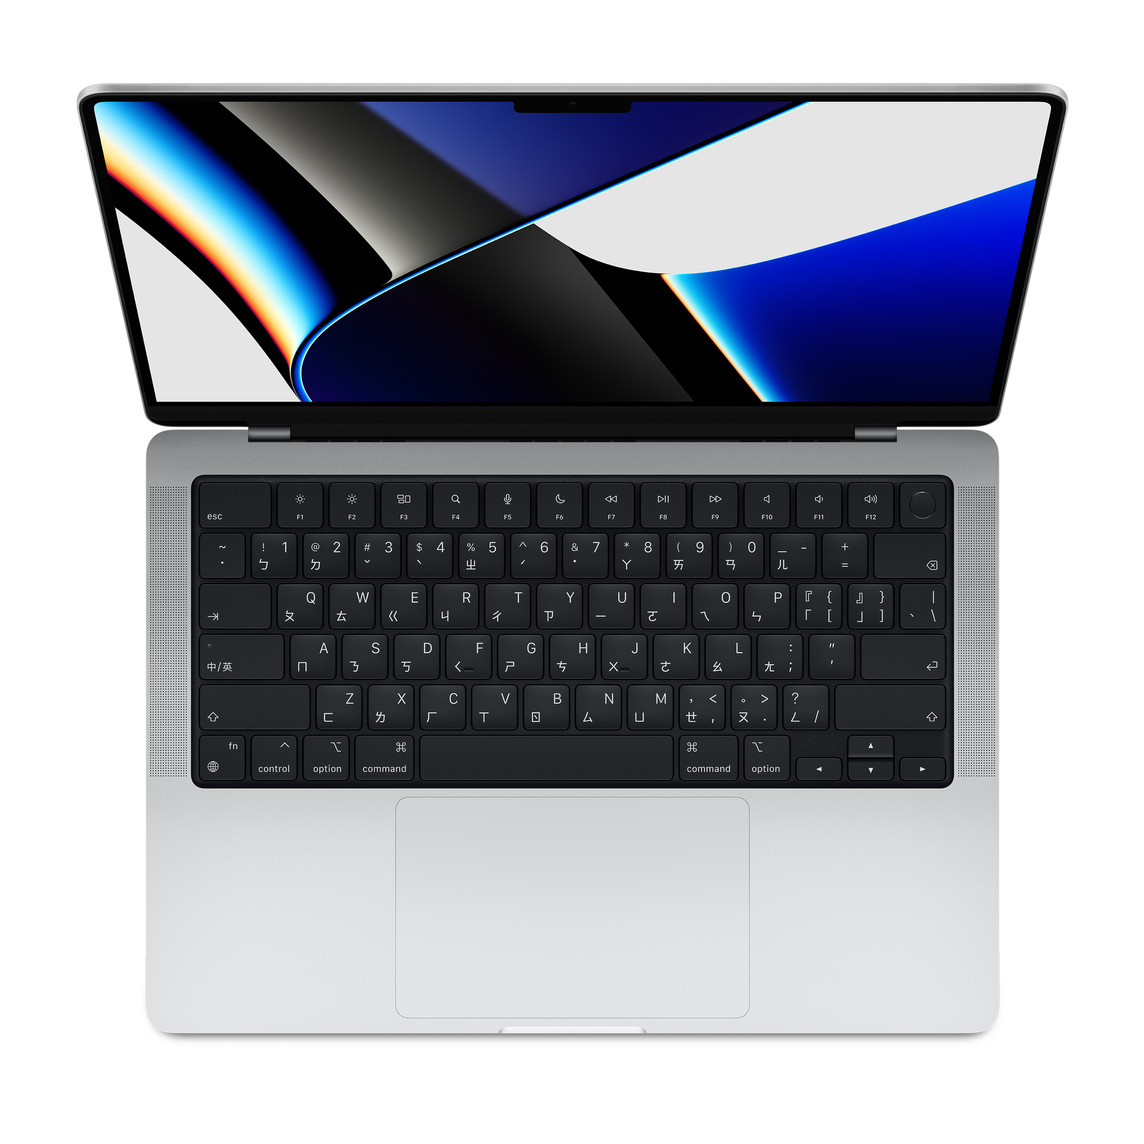 打開的銀色 MacBook Pro 俯視圖，展示顯示器、配備全高功能鍵列和圓形 Touch ID 按鈕的鍵盤，以及觸控式軌跡板。